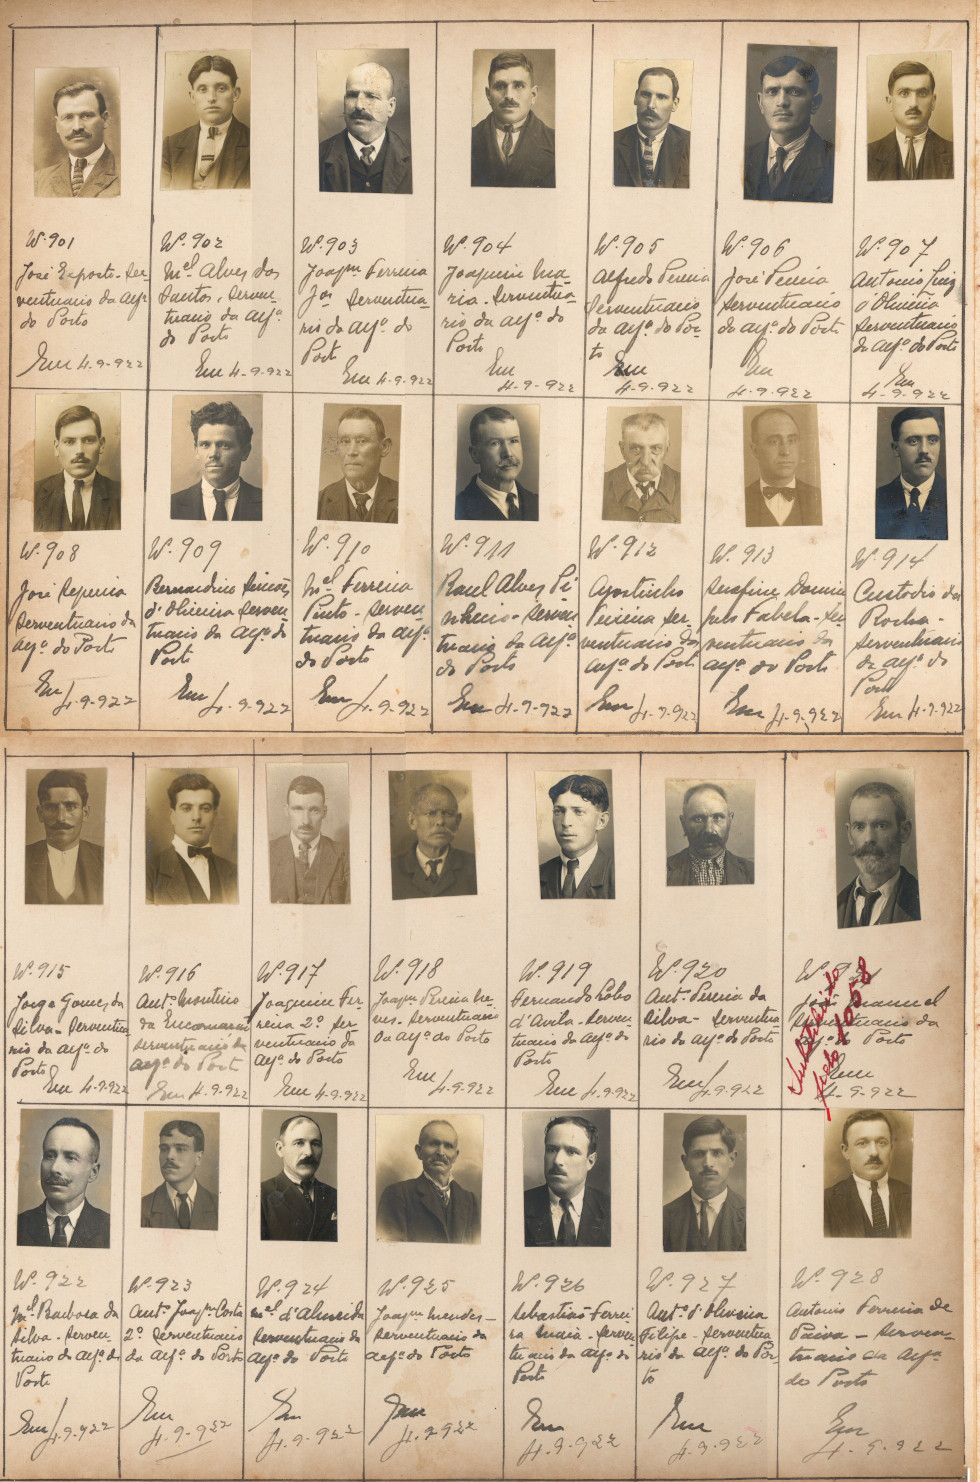 Álbum Fotográfico, com capa em cartão e fotografias a p&b com identificação dos funcionários da Alfândega de Lisboa, 1919-1926